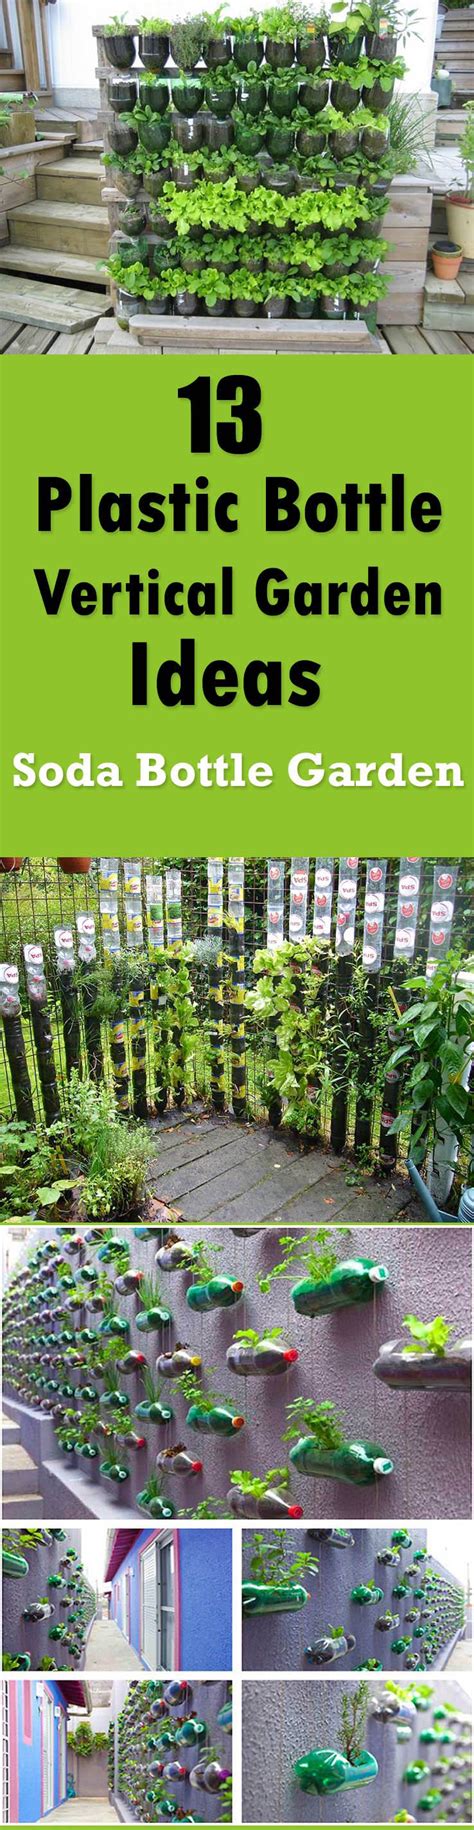 13 Soda Bottle Vertical Garden Ideas Dan330